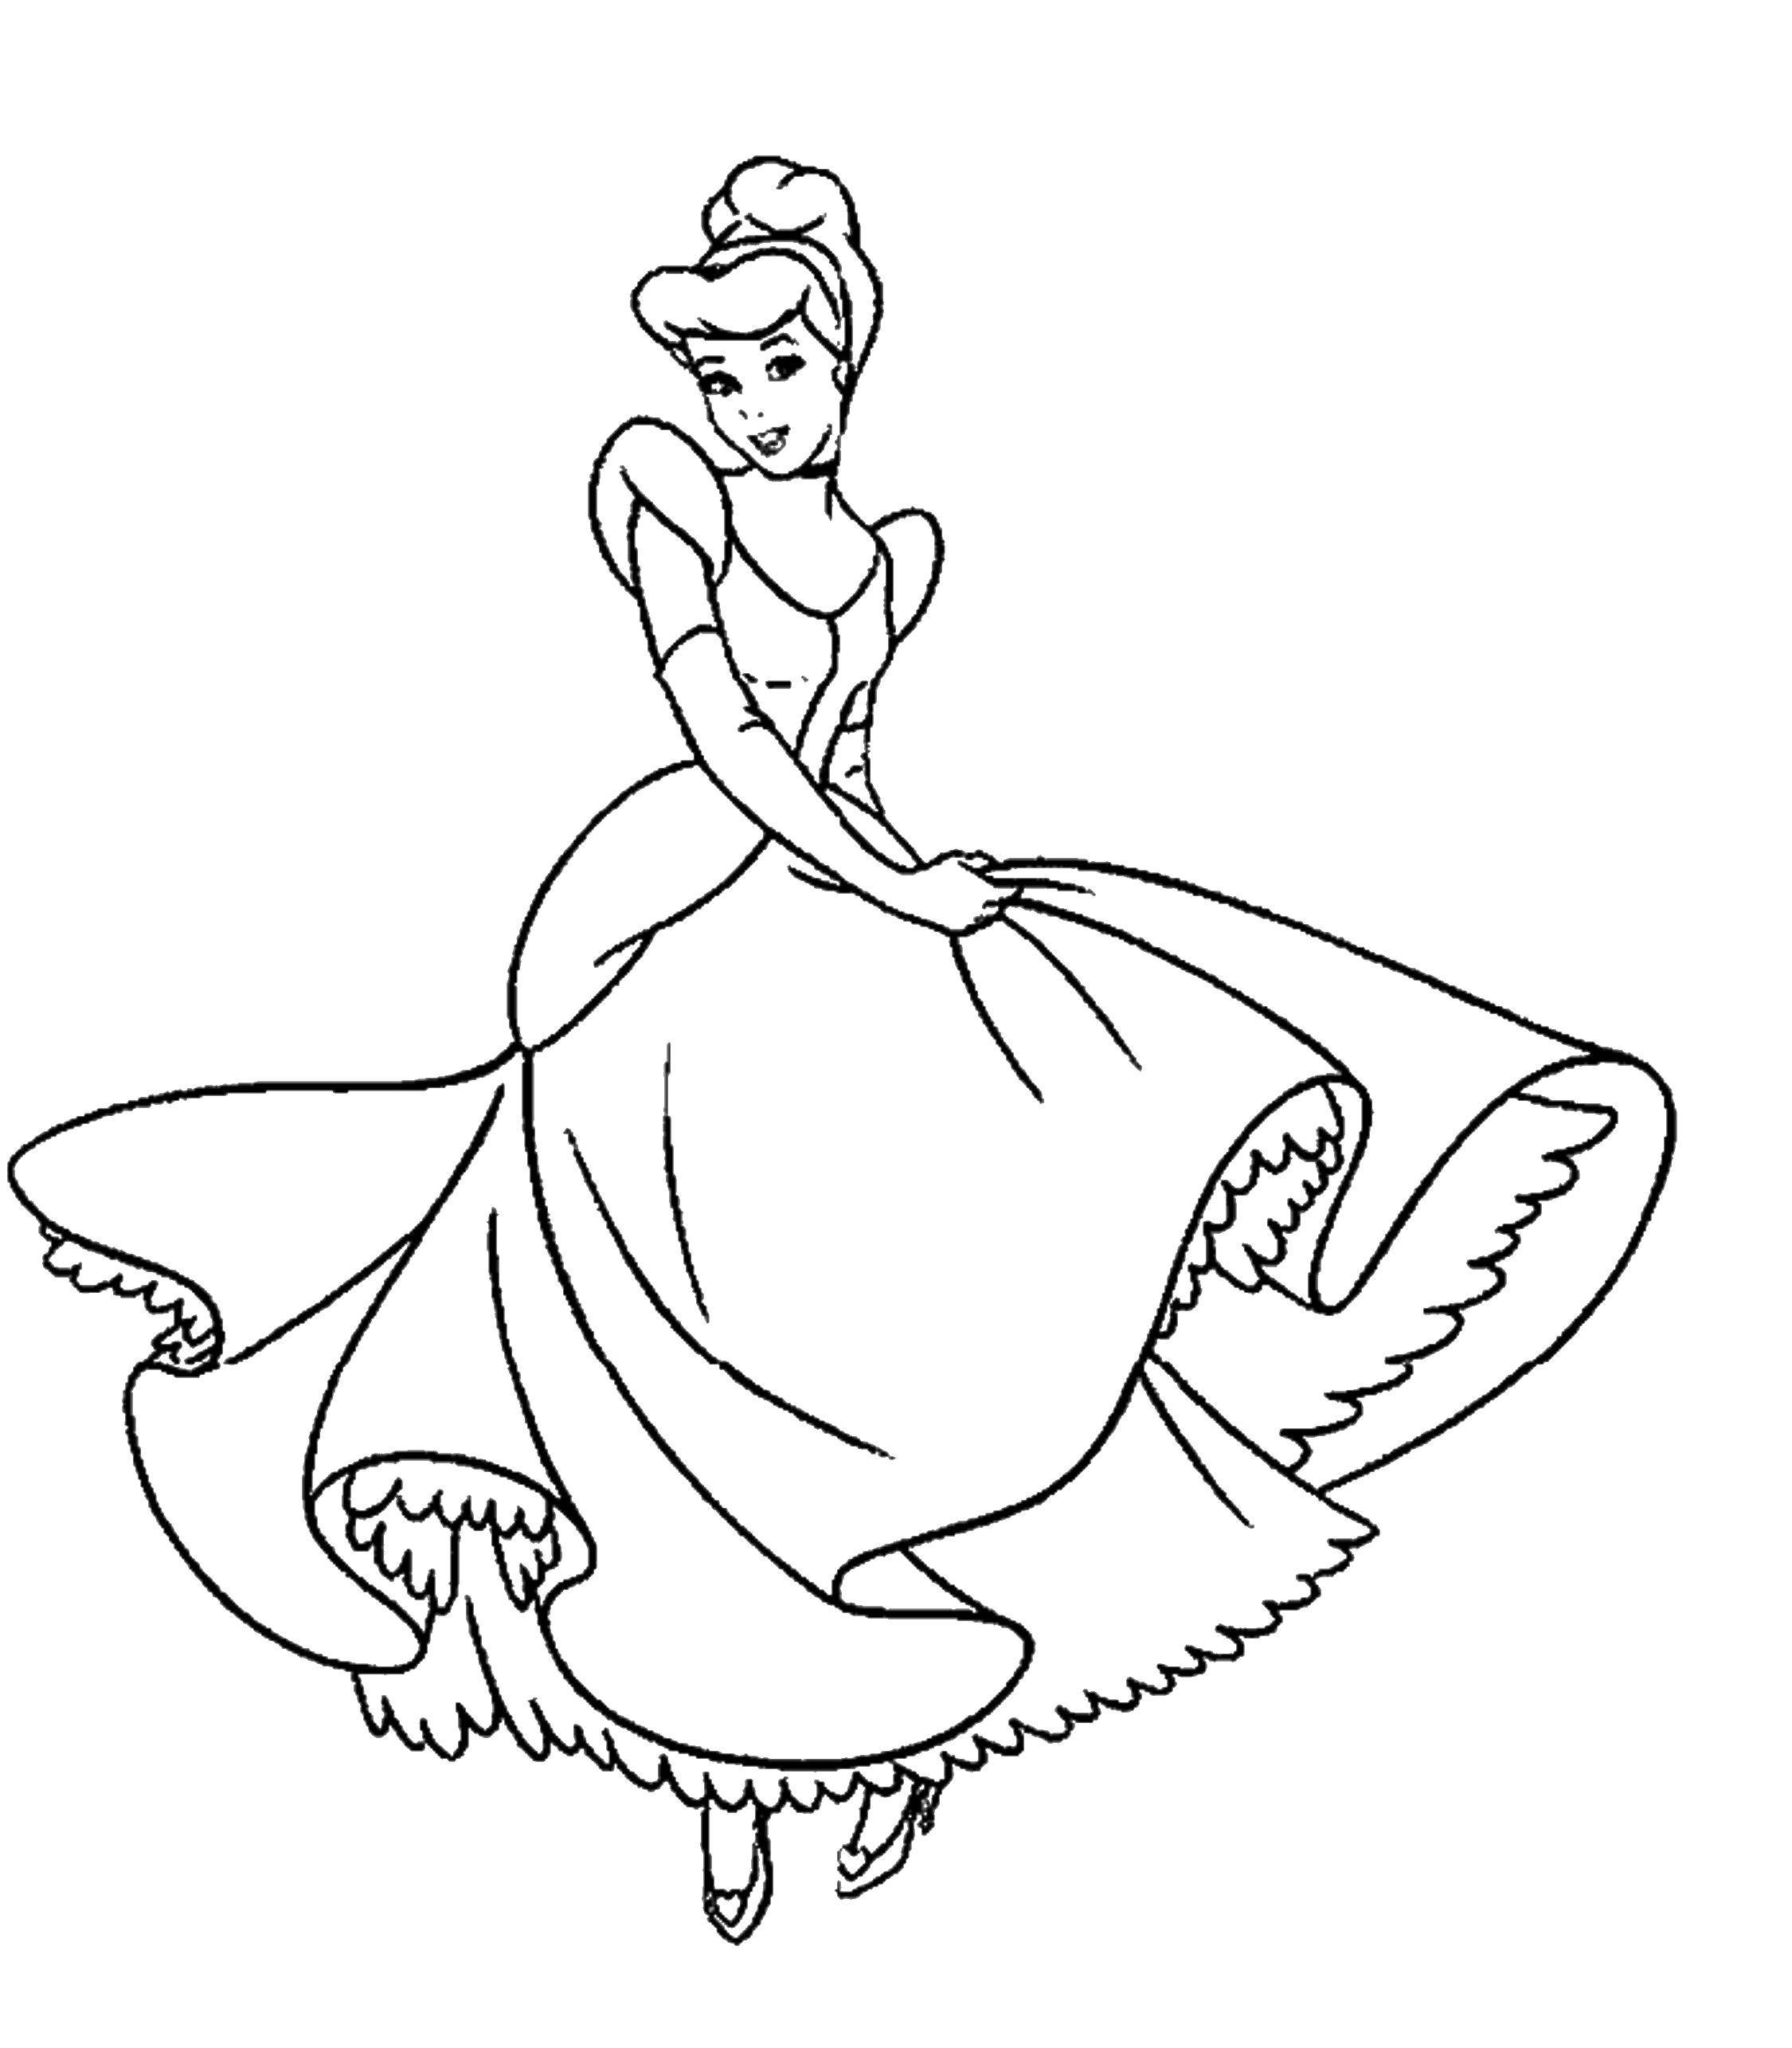 Название: Раскраска Золушка. Категория: Принцессы. Теги: принцесса, сказка, мультфильмы, Золушка.